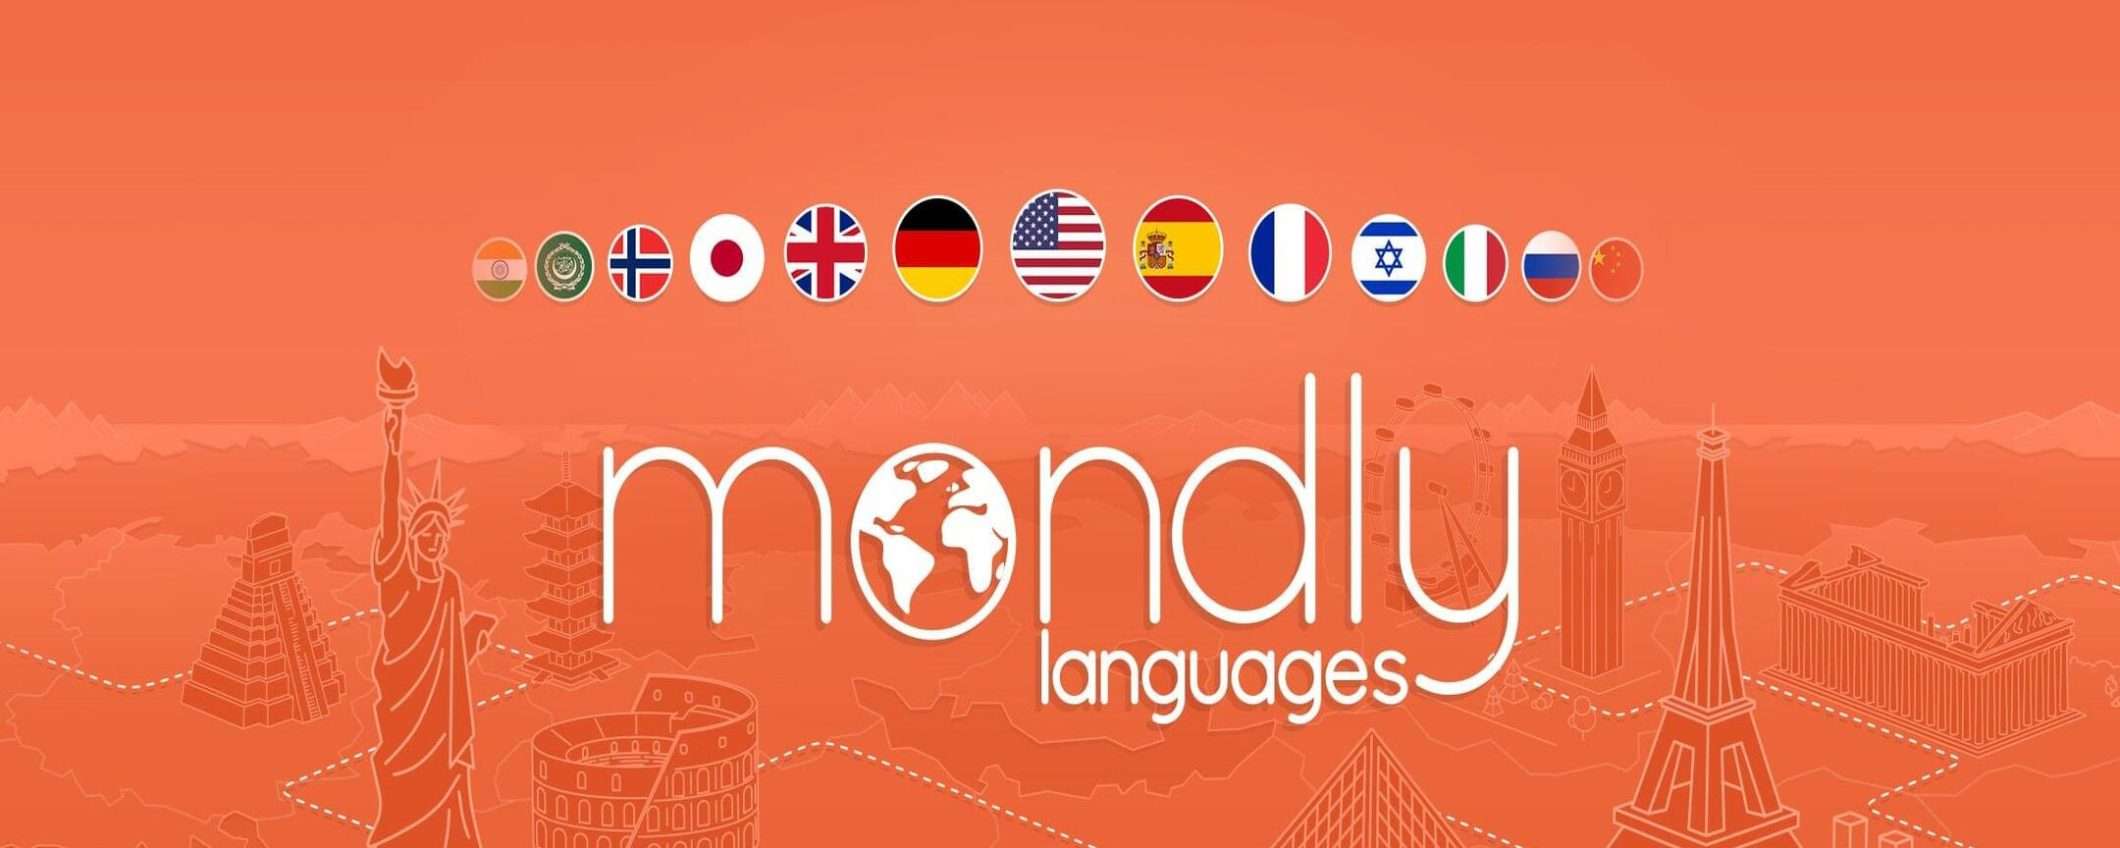 Impara una nuova lingua con Mondly: sconto del 96%